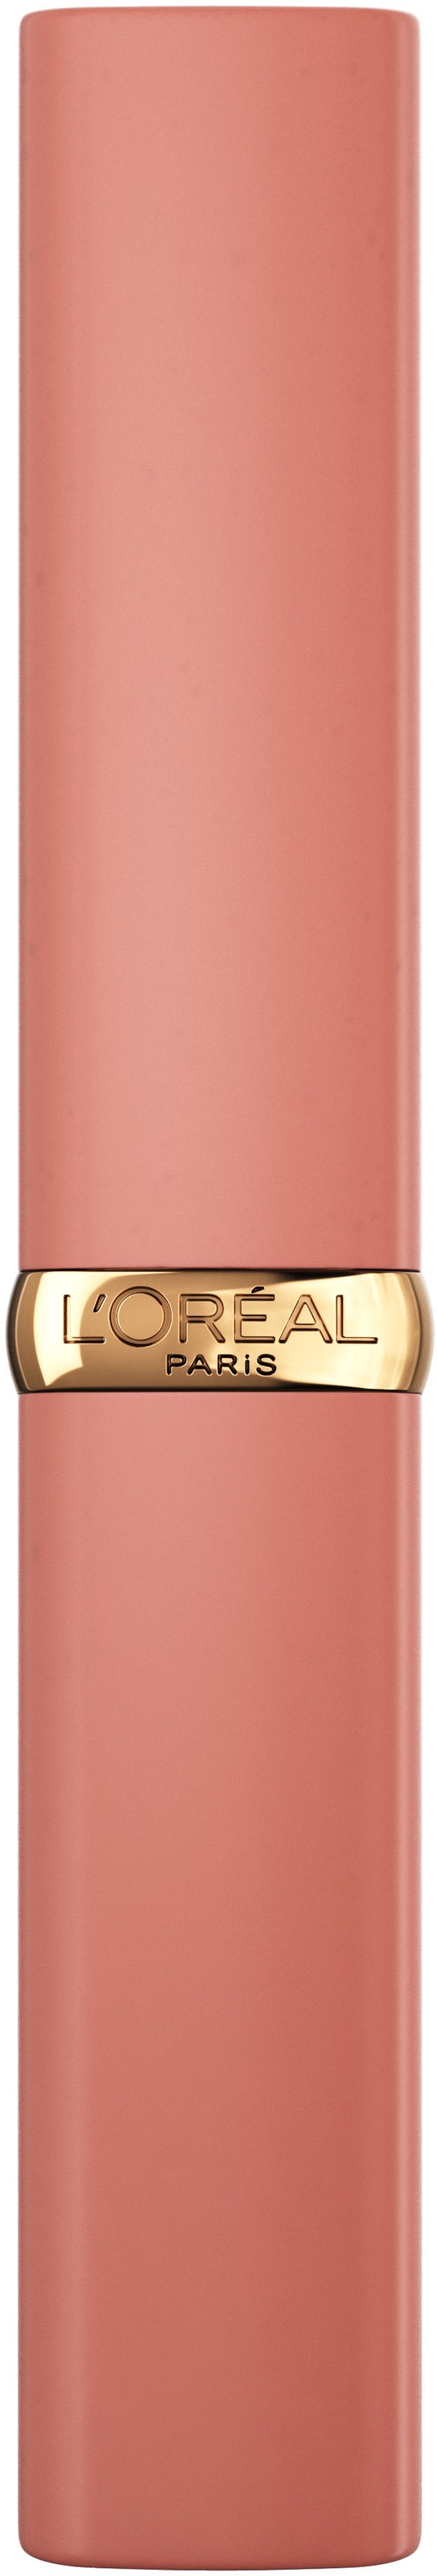 L\'ORÉAL PARIS Lippenpflegestift »Color Intense UNIVERSAL Matte« Volume | Riche kaufen